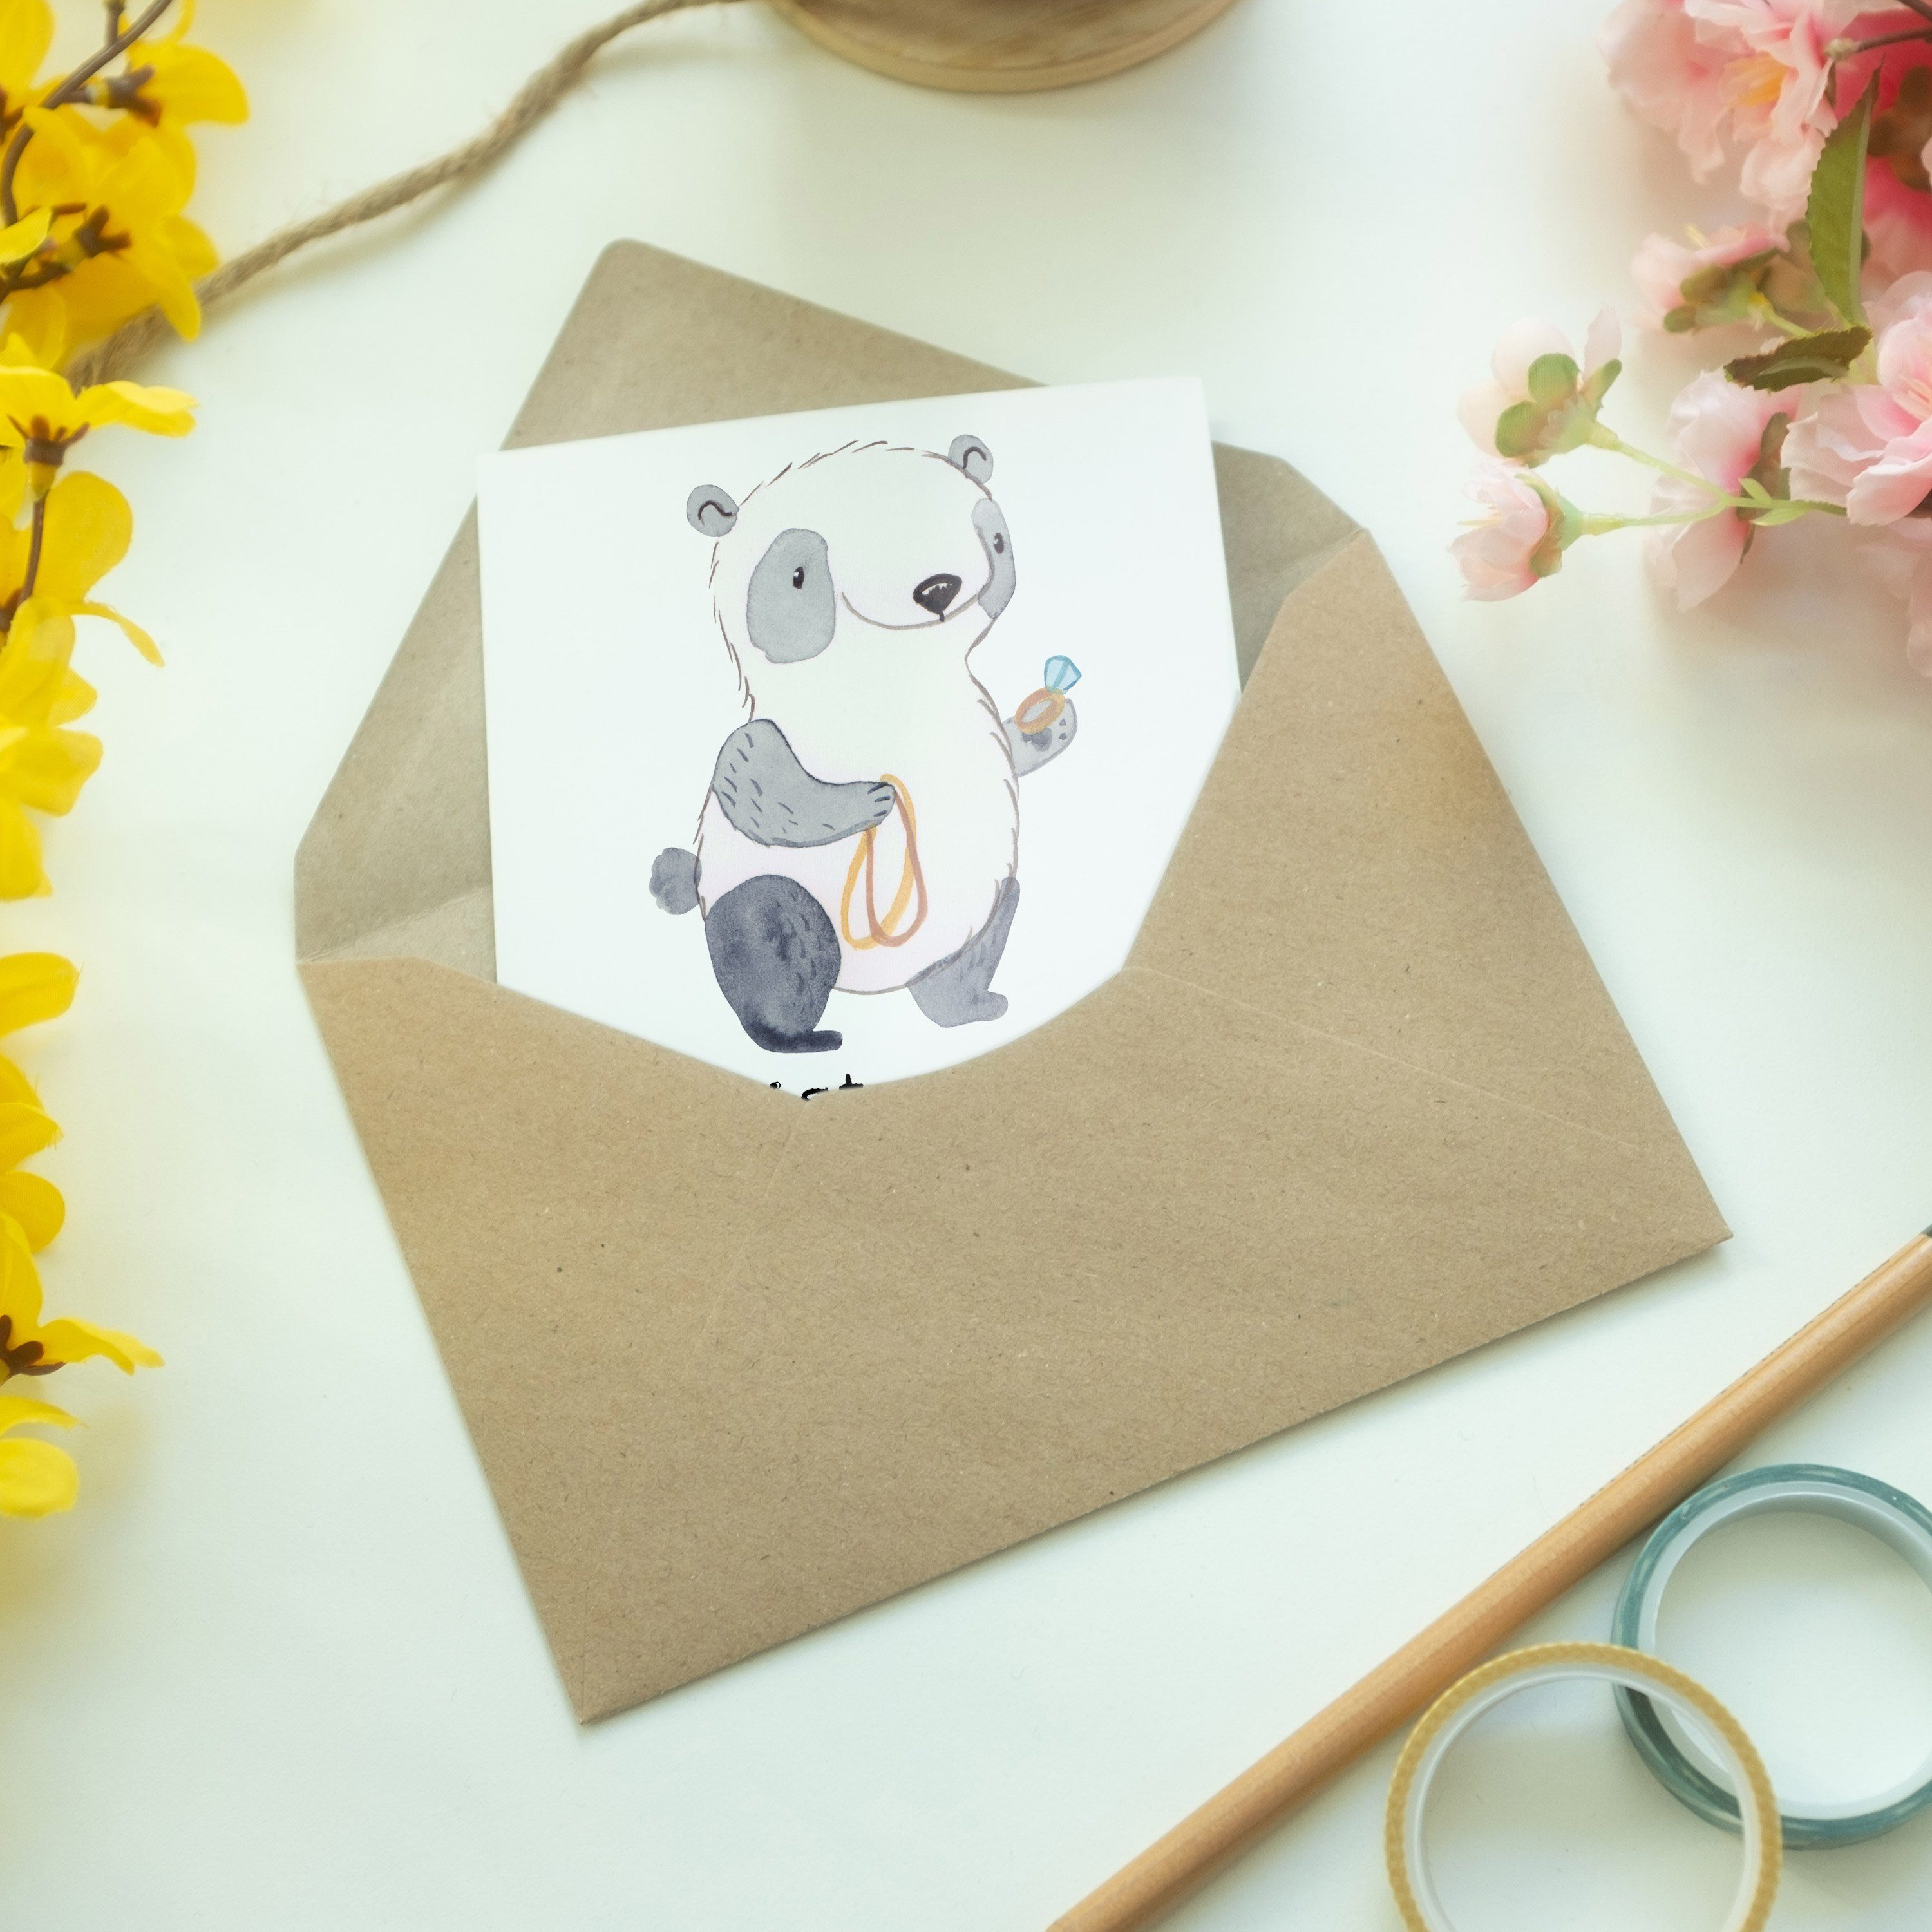 Geschenk, Herz Mr. Panda Weiß & Goldschmied Geburtstagskarte, - Mrs. Grußkarte - Mitarbeiter mit